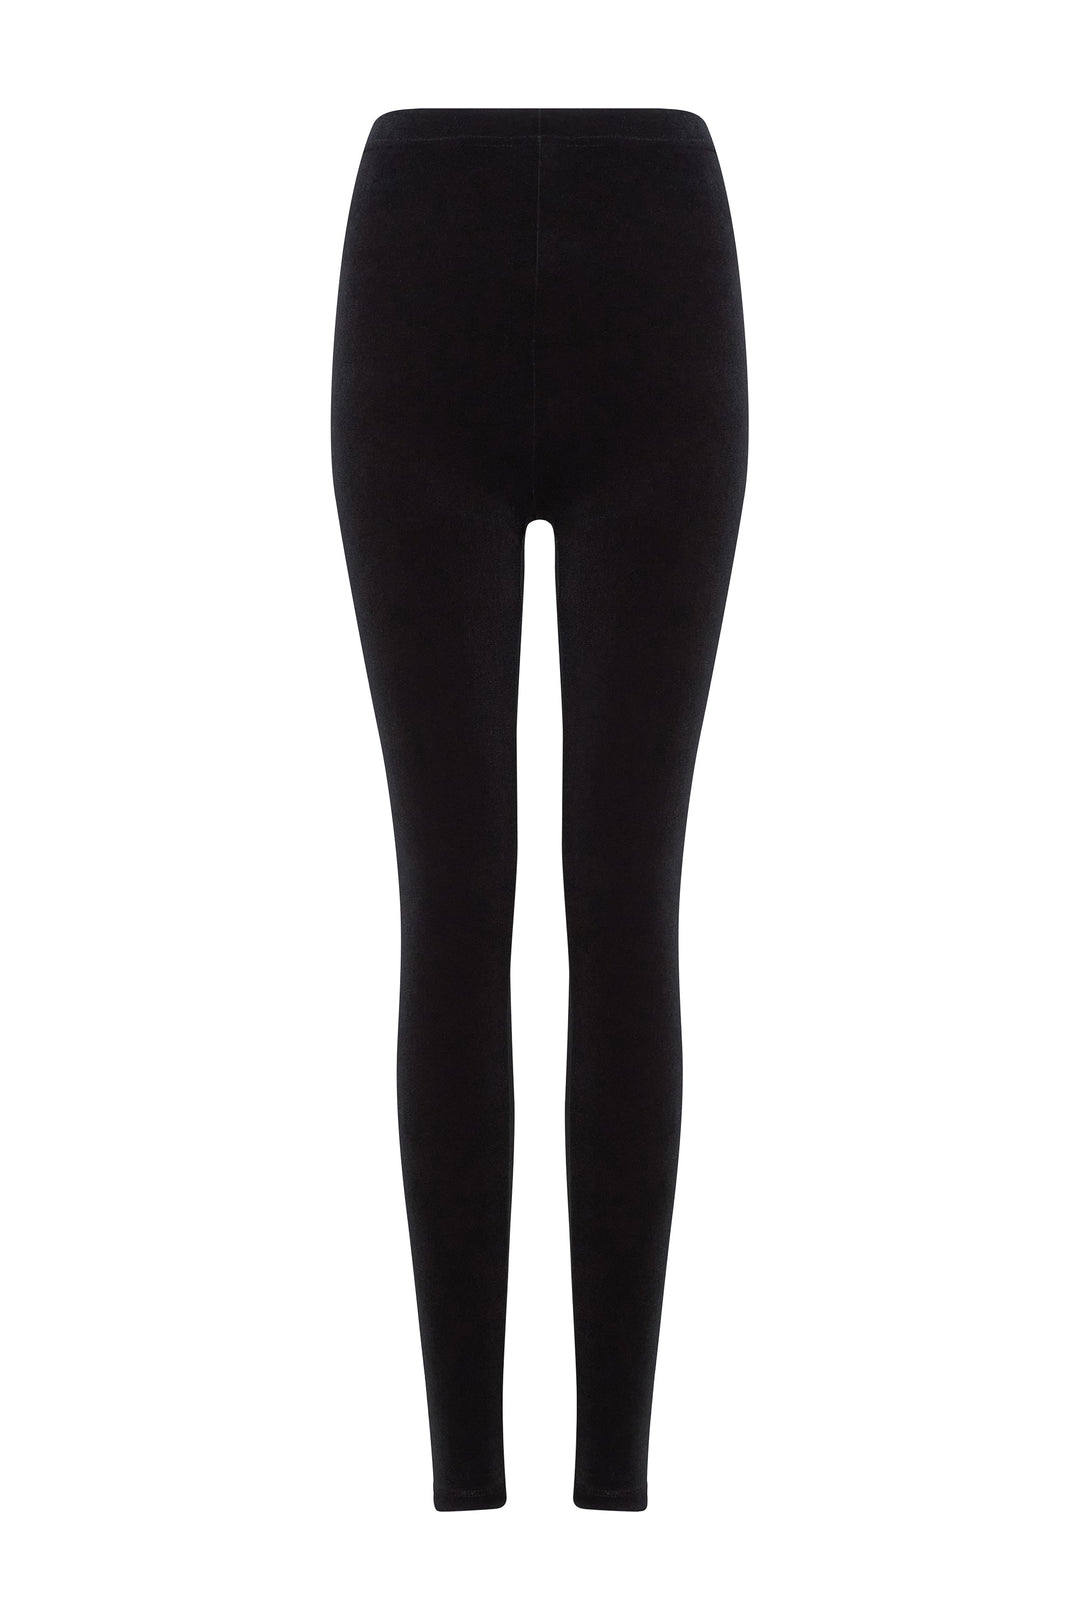 Magenta velvet leggings with black girdle – Kalmanovich Global